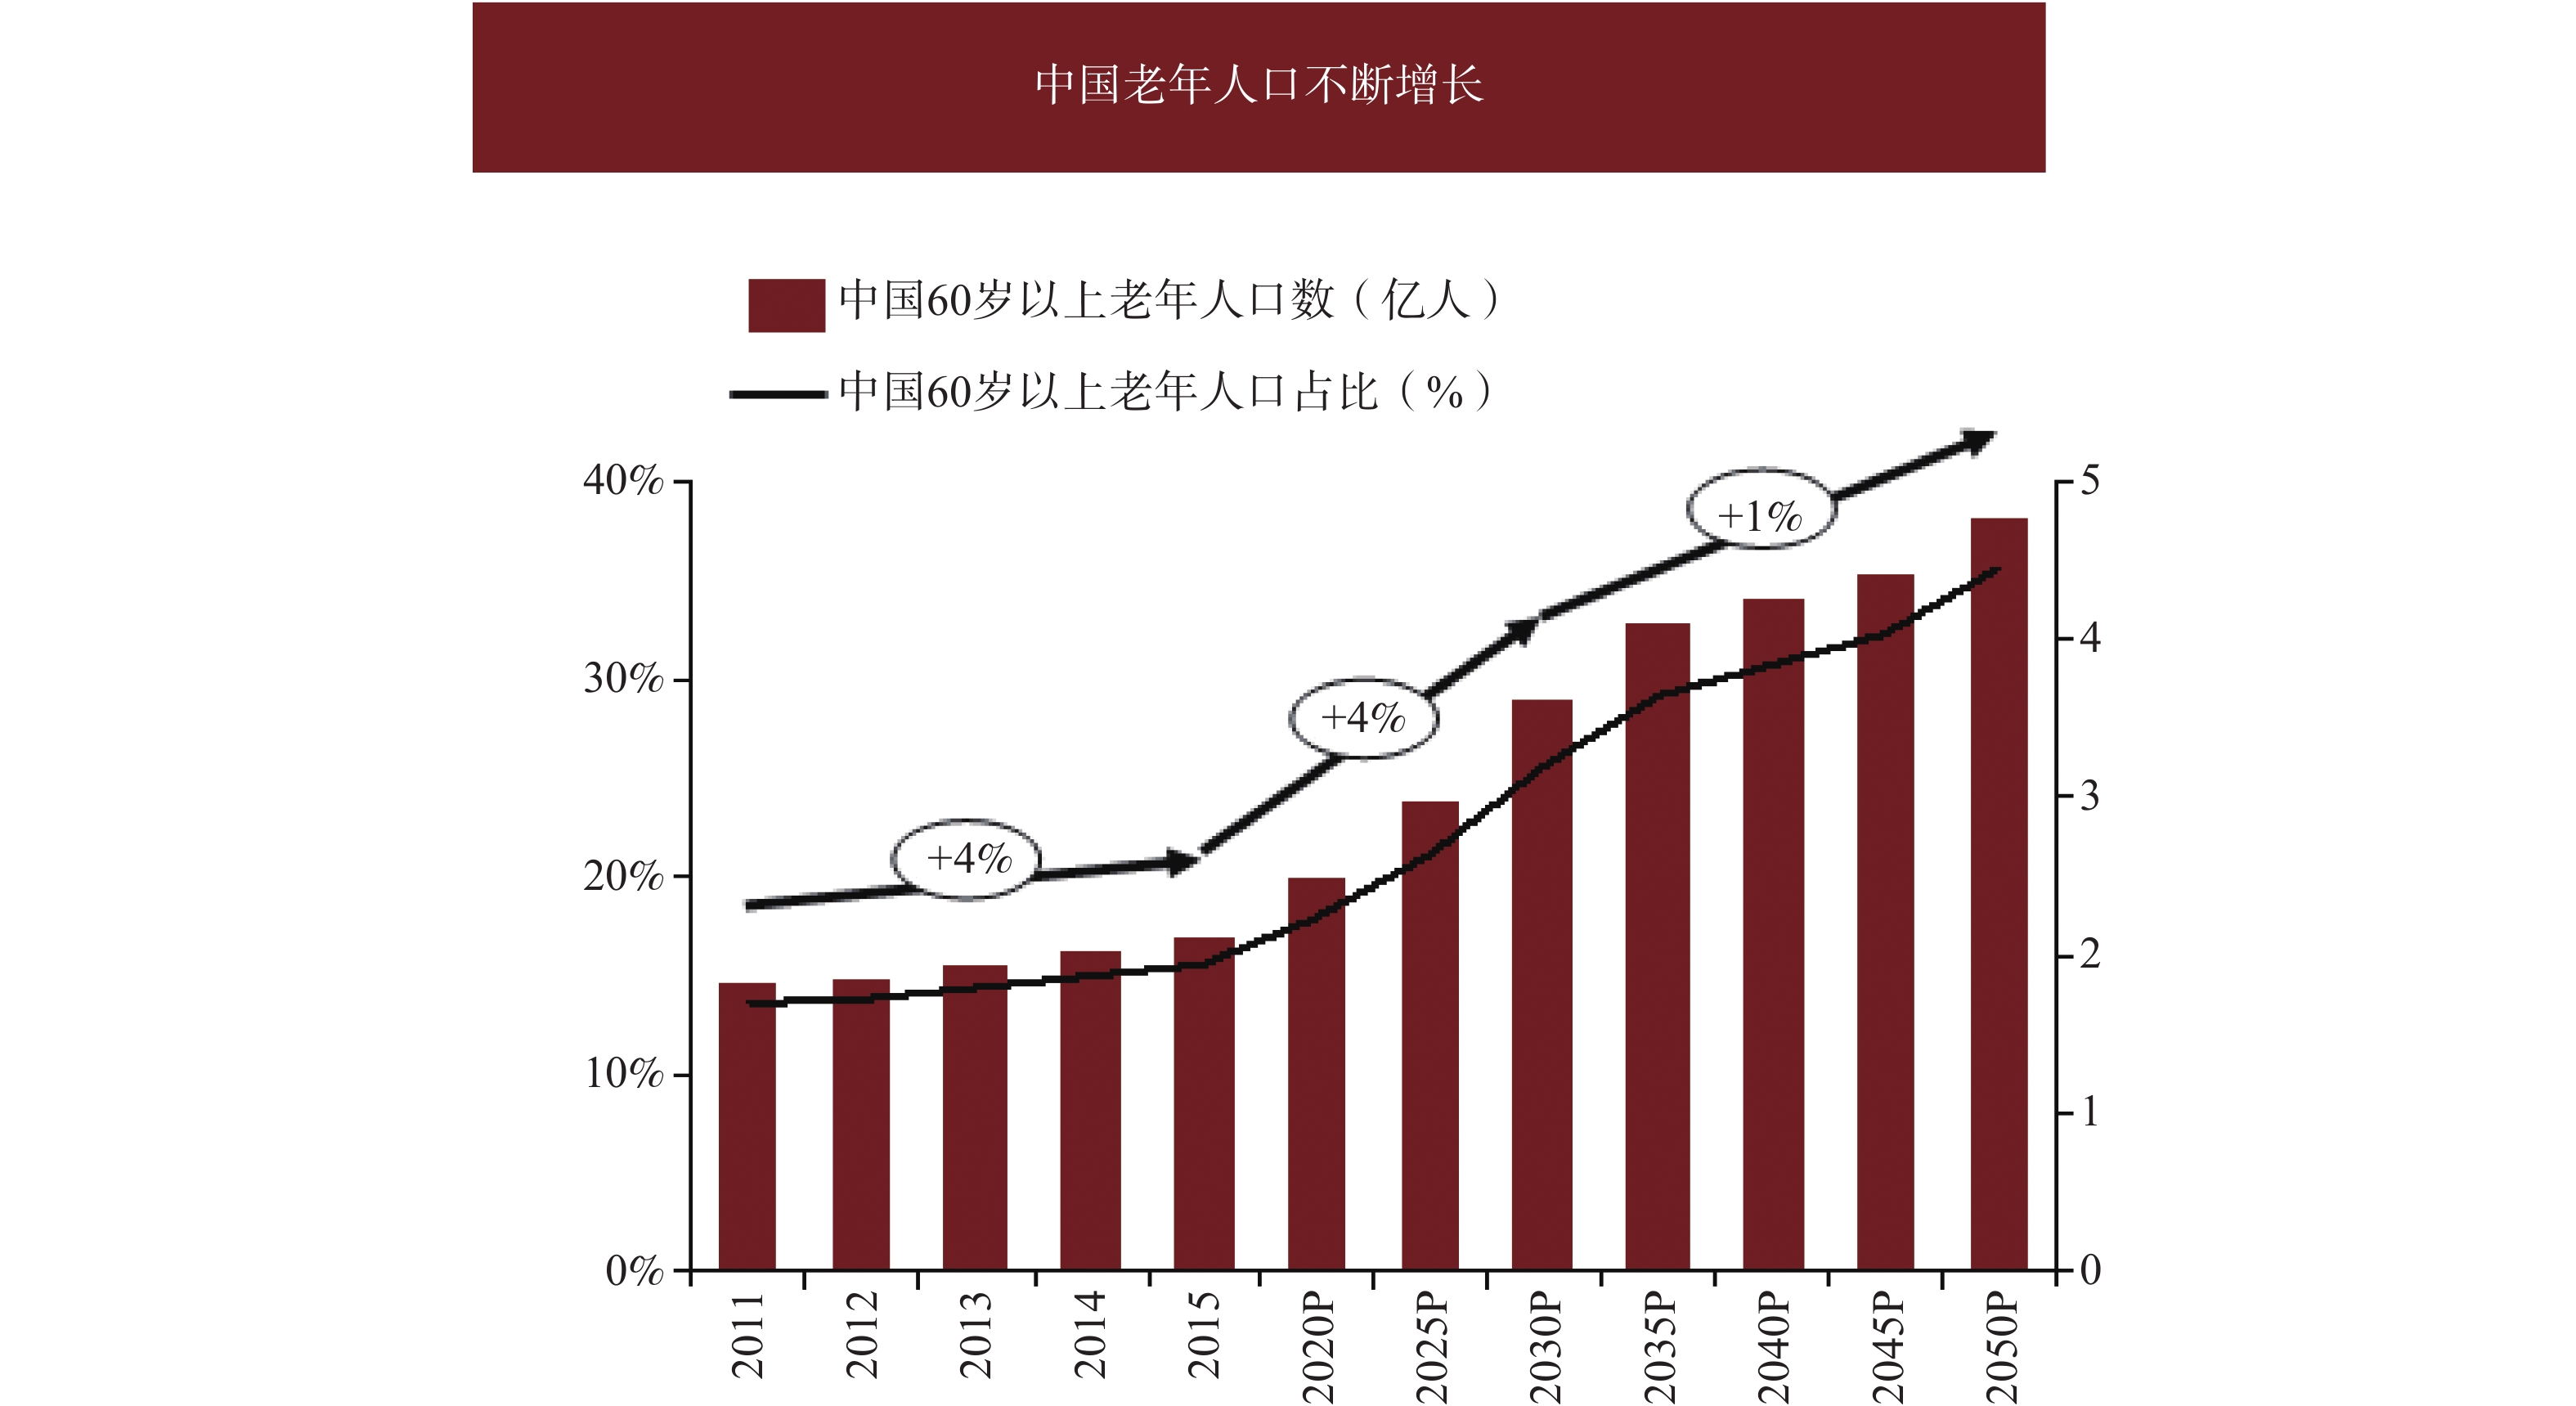 图 1         中国老年人口增长趋势图